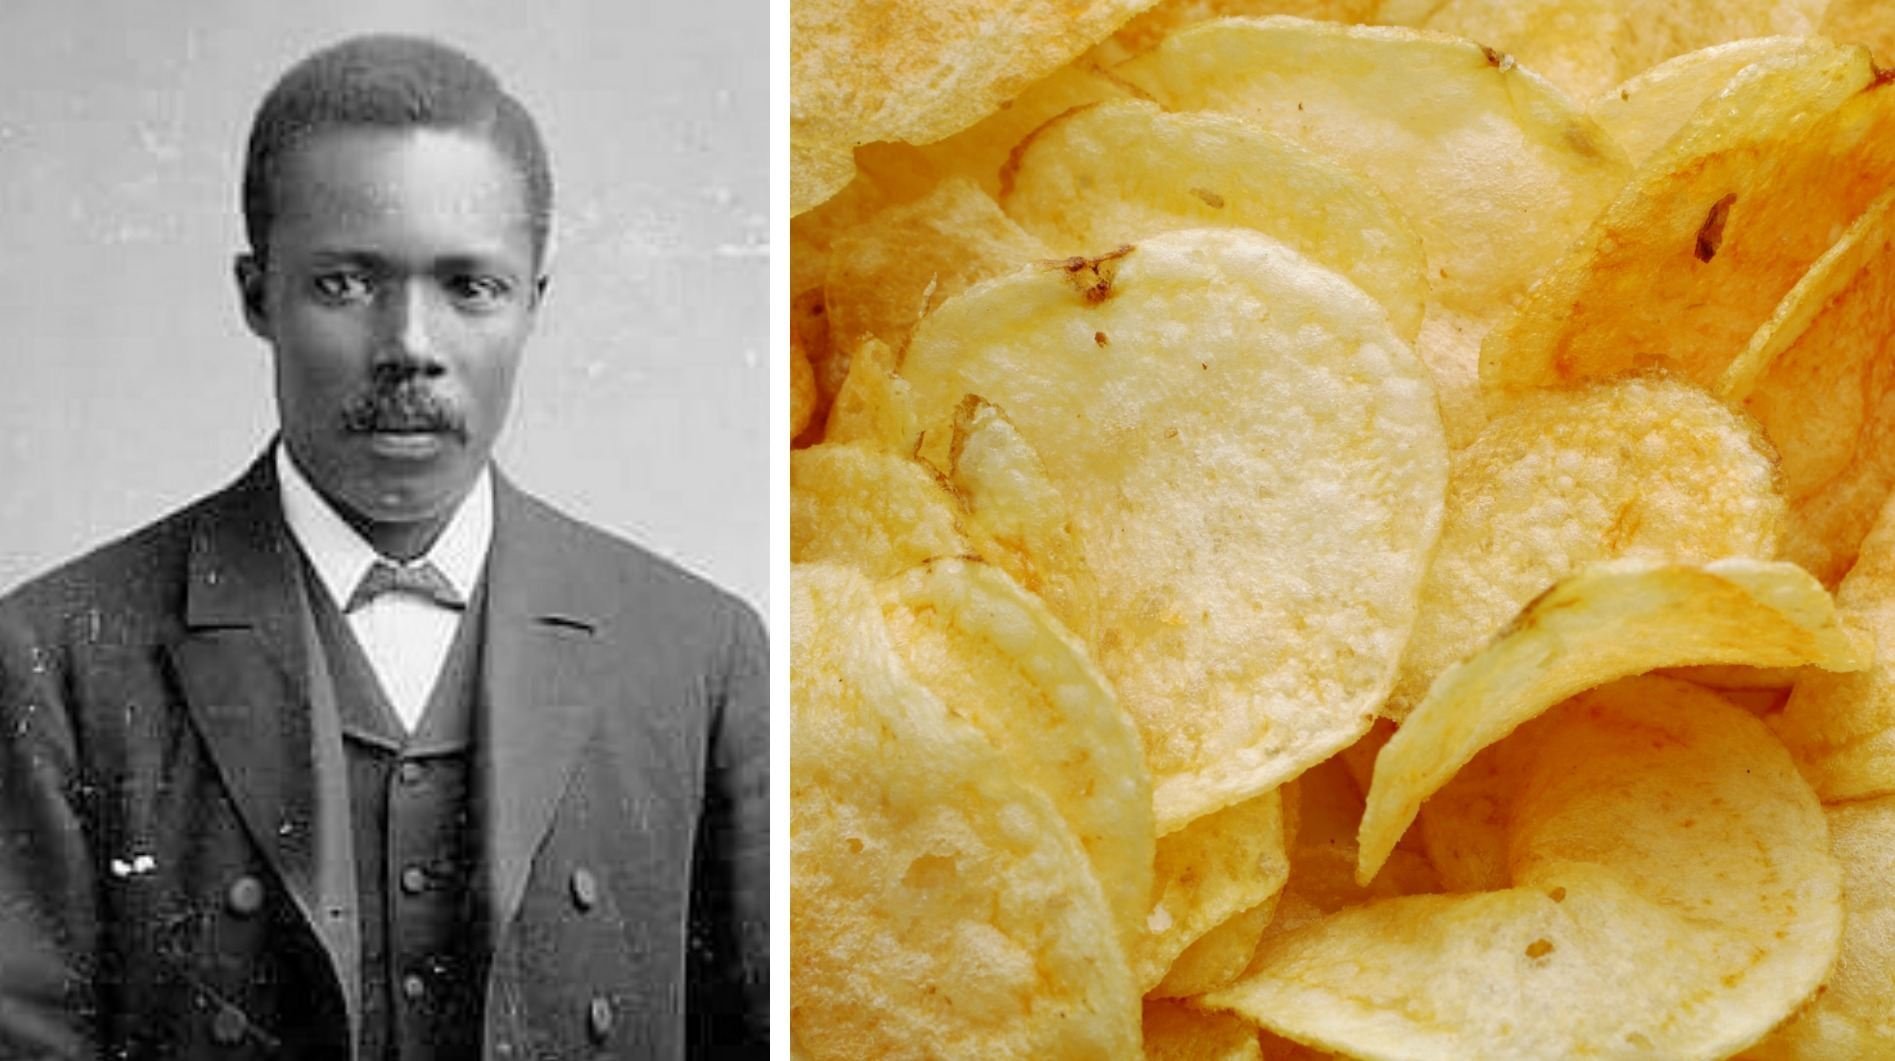 Картофельные чипсы в каком году придумали. Джордж Крам. Шеф-повар Джордж Крам. Шеф Джордж Крам изобретатель чипсов. Джордж Крам изобрел чипсы.